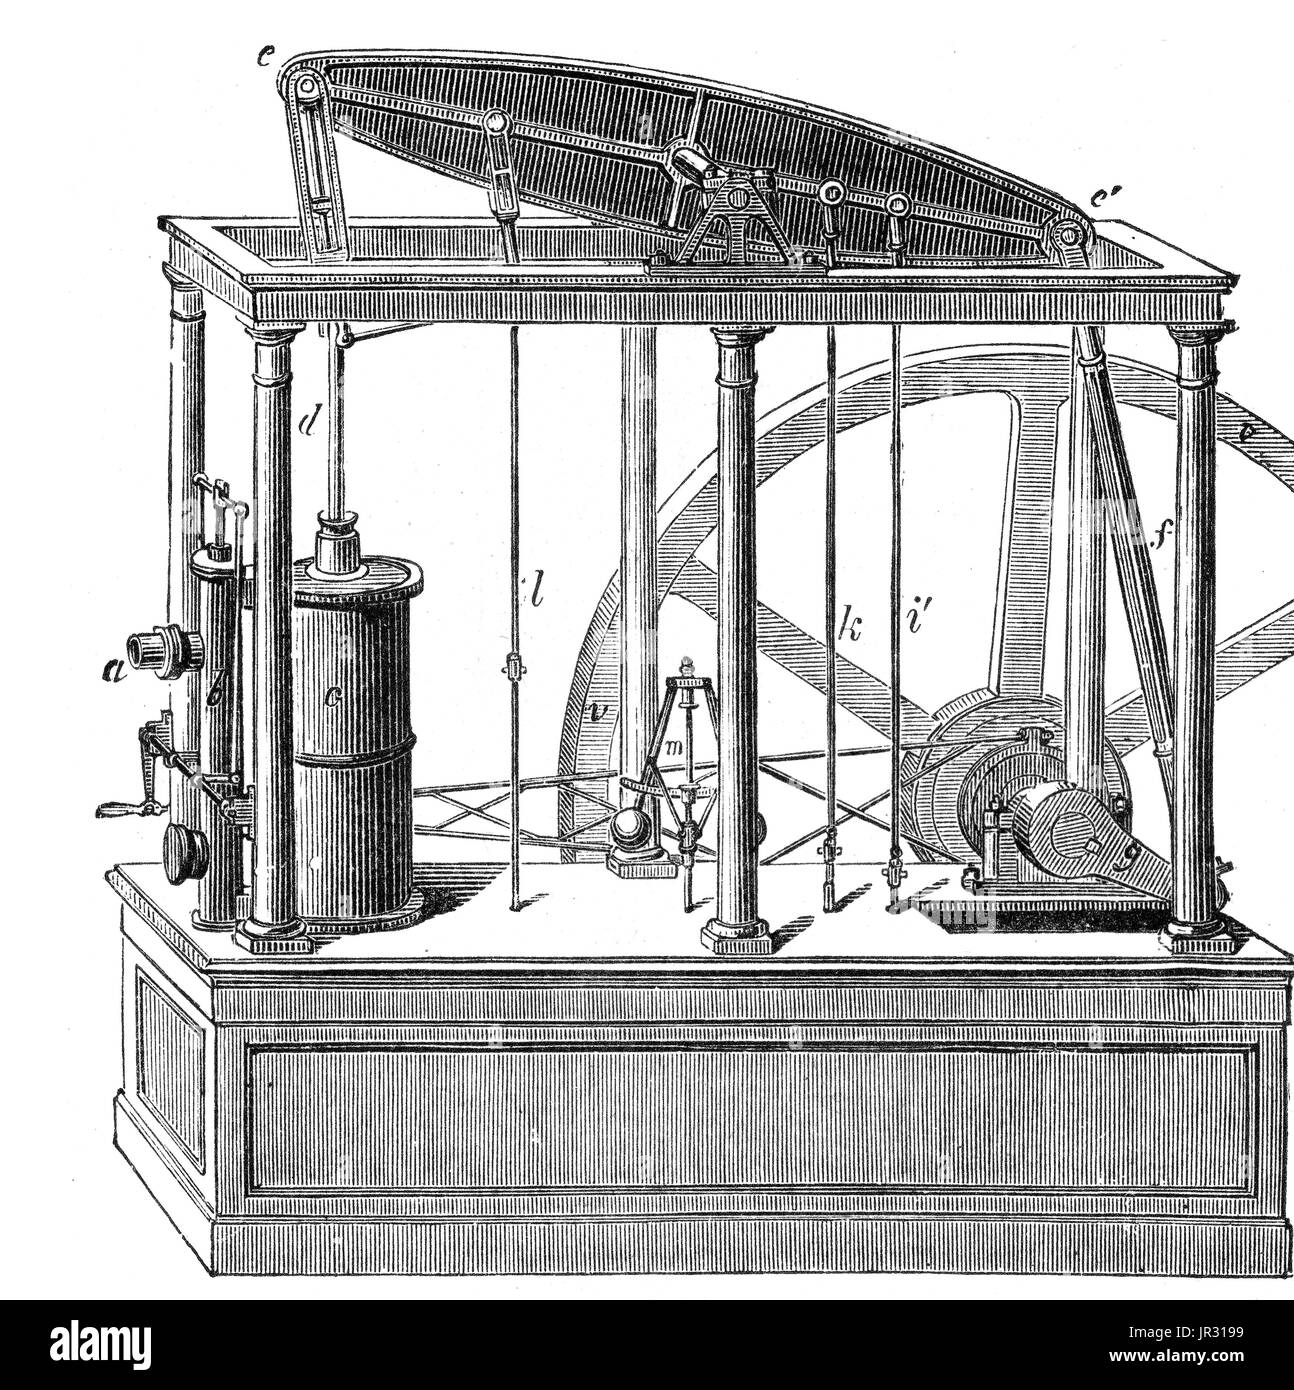 Los vatios motor a vapor fue el primer tipo de motor de vapor para hacer  uso de vapor a una presión justo por encima de la atmósfera a introducir el  pistón ayudado